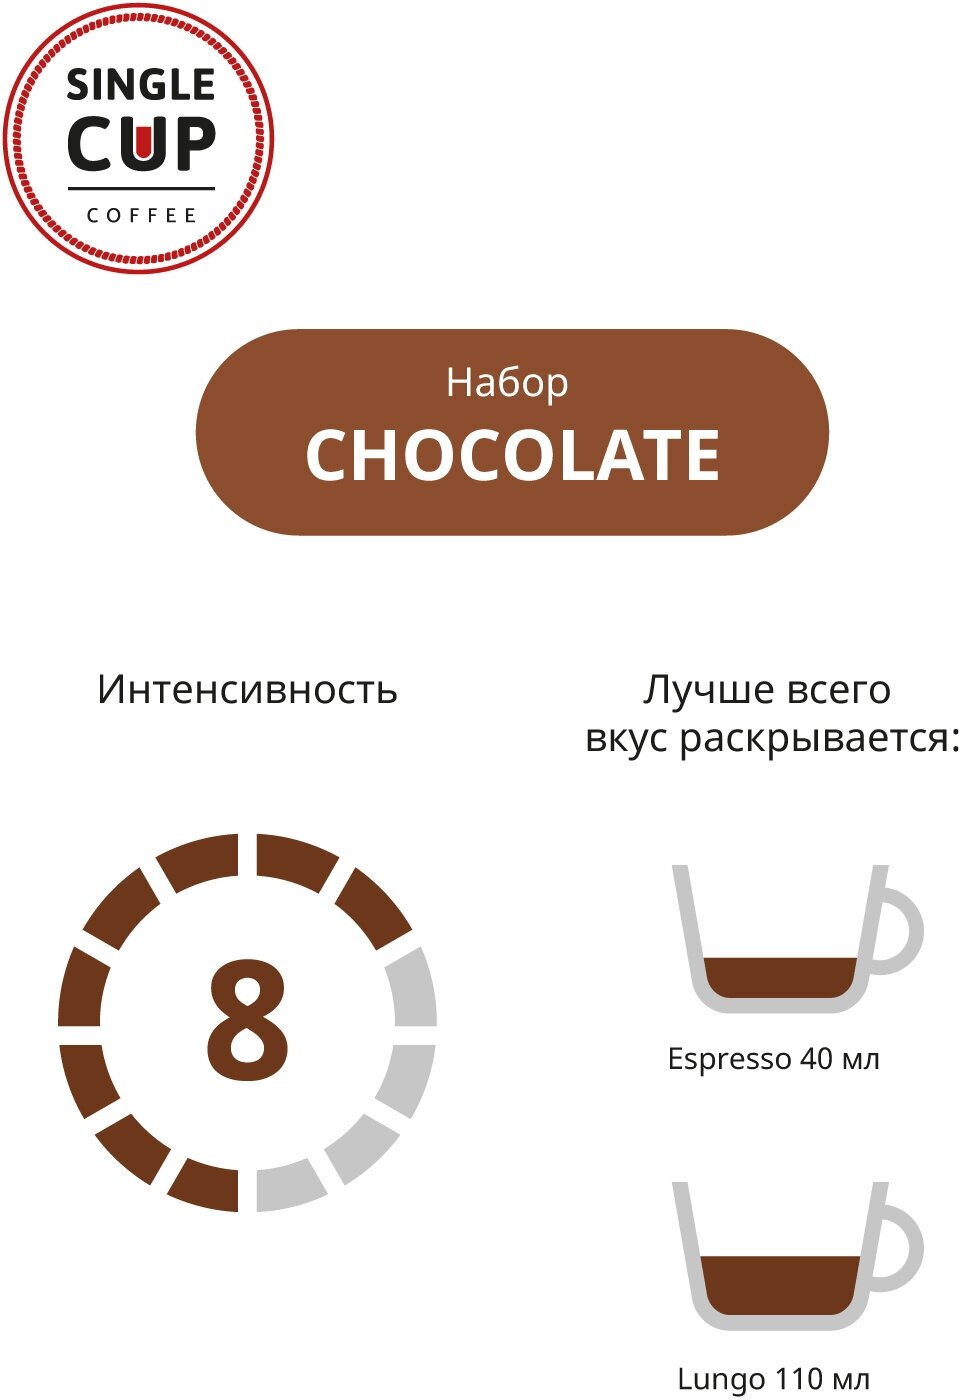 Кофе в капсулах Single Cup Chocolate, интенсивность 8, 10 кап. в уп,